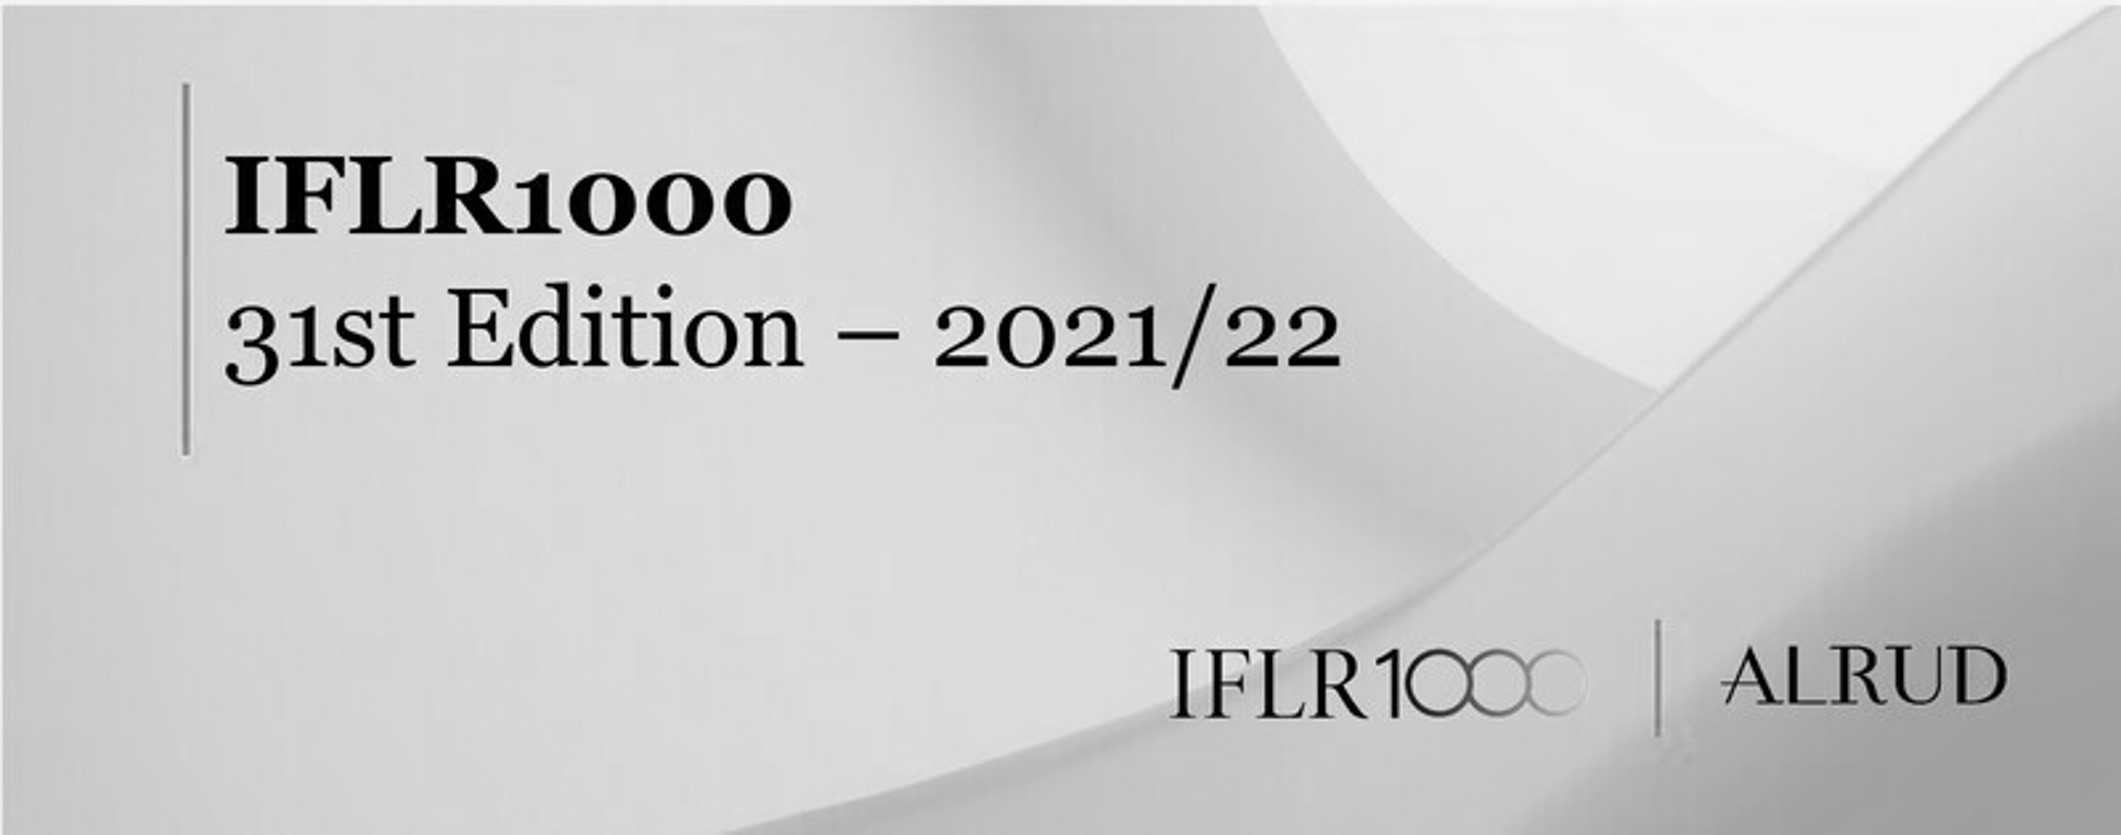 АЛРУД сохраняет лидирующие позиции в рейтинге IFLR1000 в 31-ом издании 2021/22